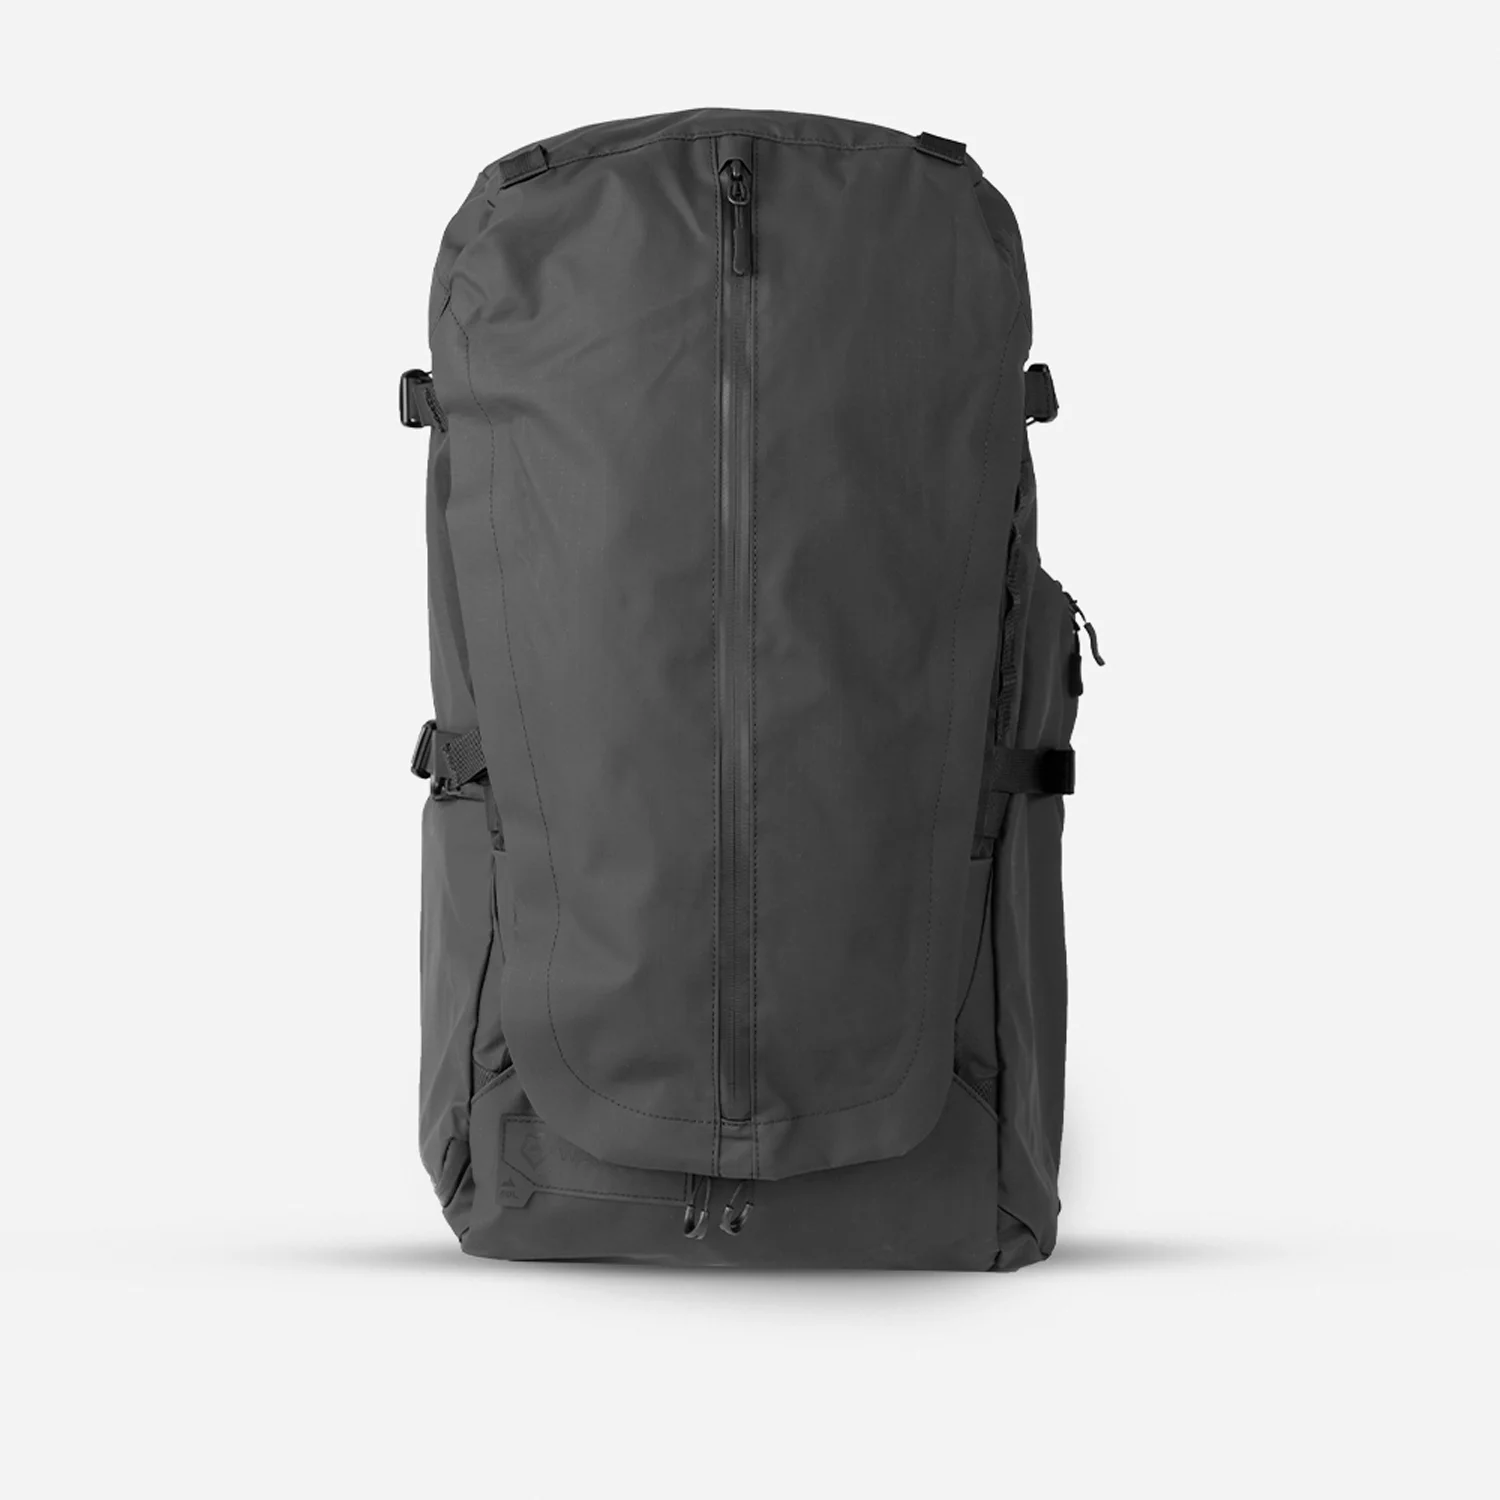 Fernweh backpacking bag